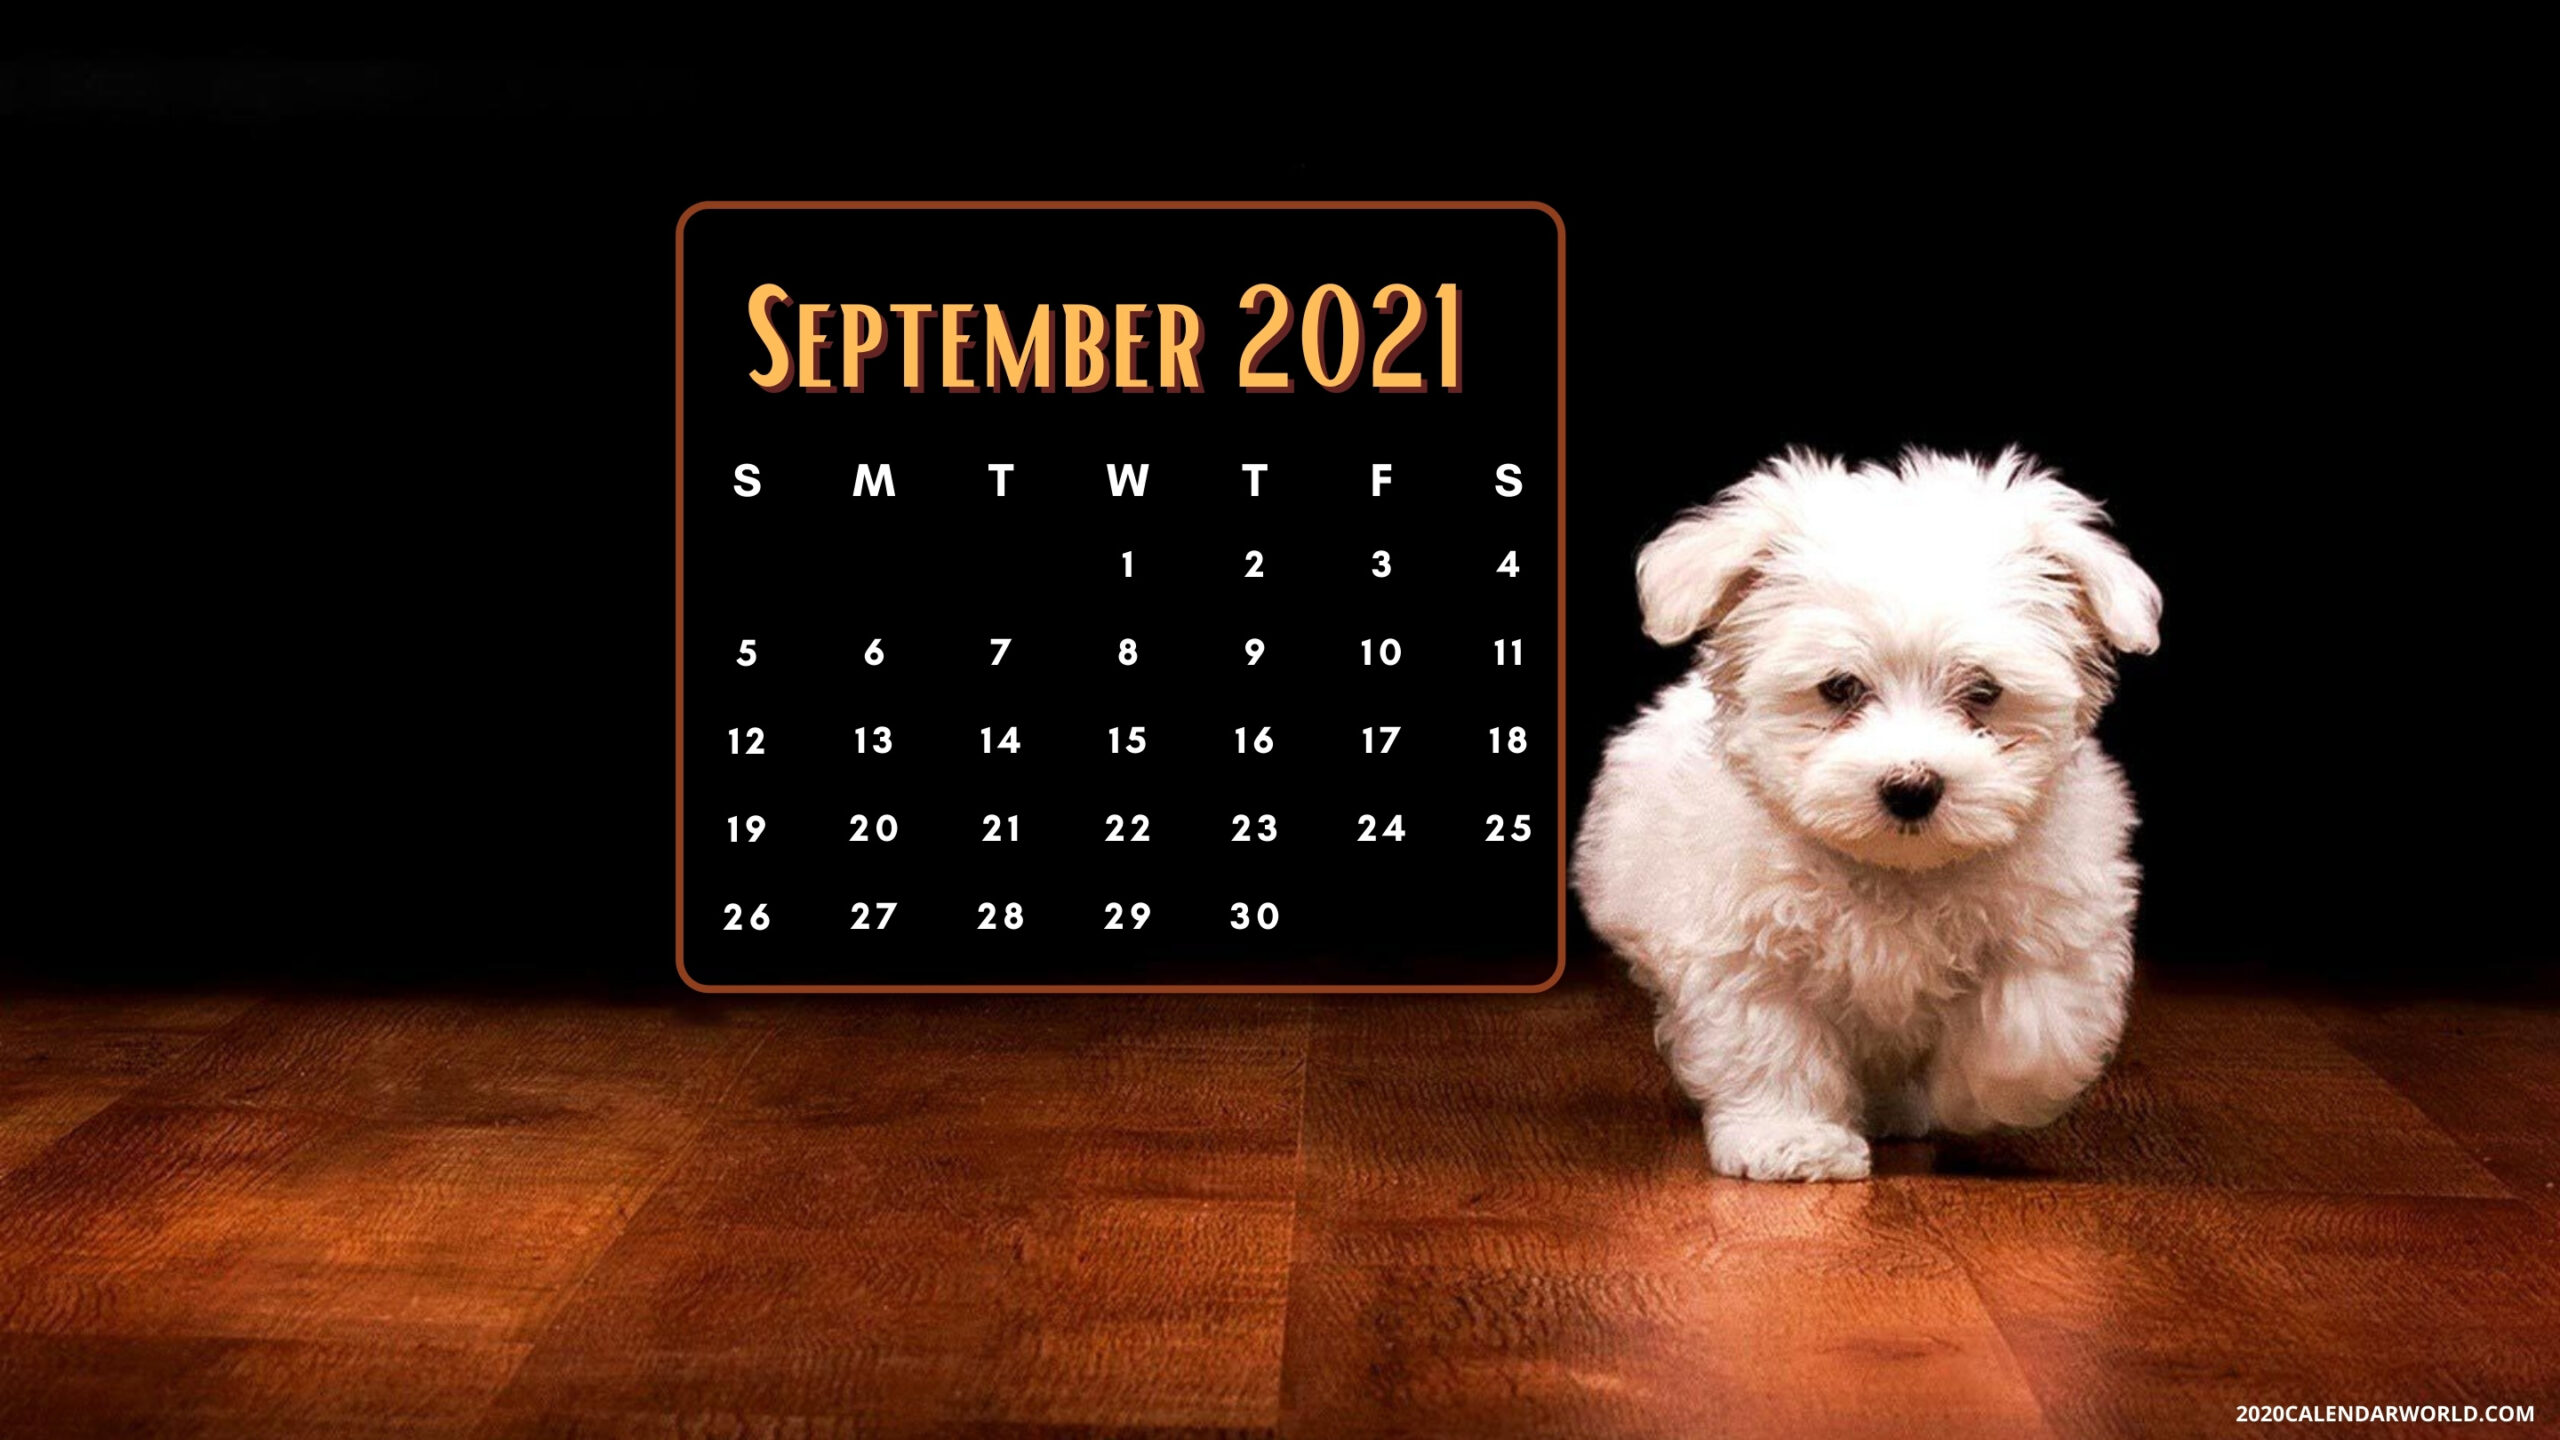 September 2021 Calendar Desktop HD Wallpaper & Background